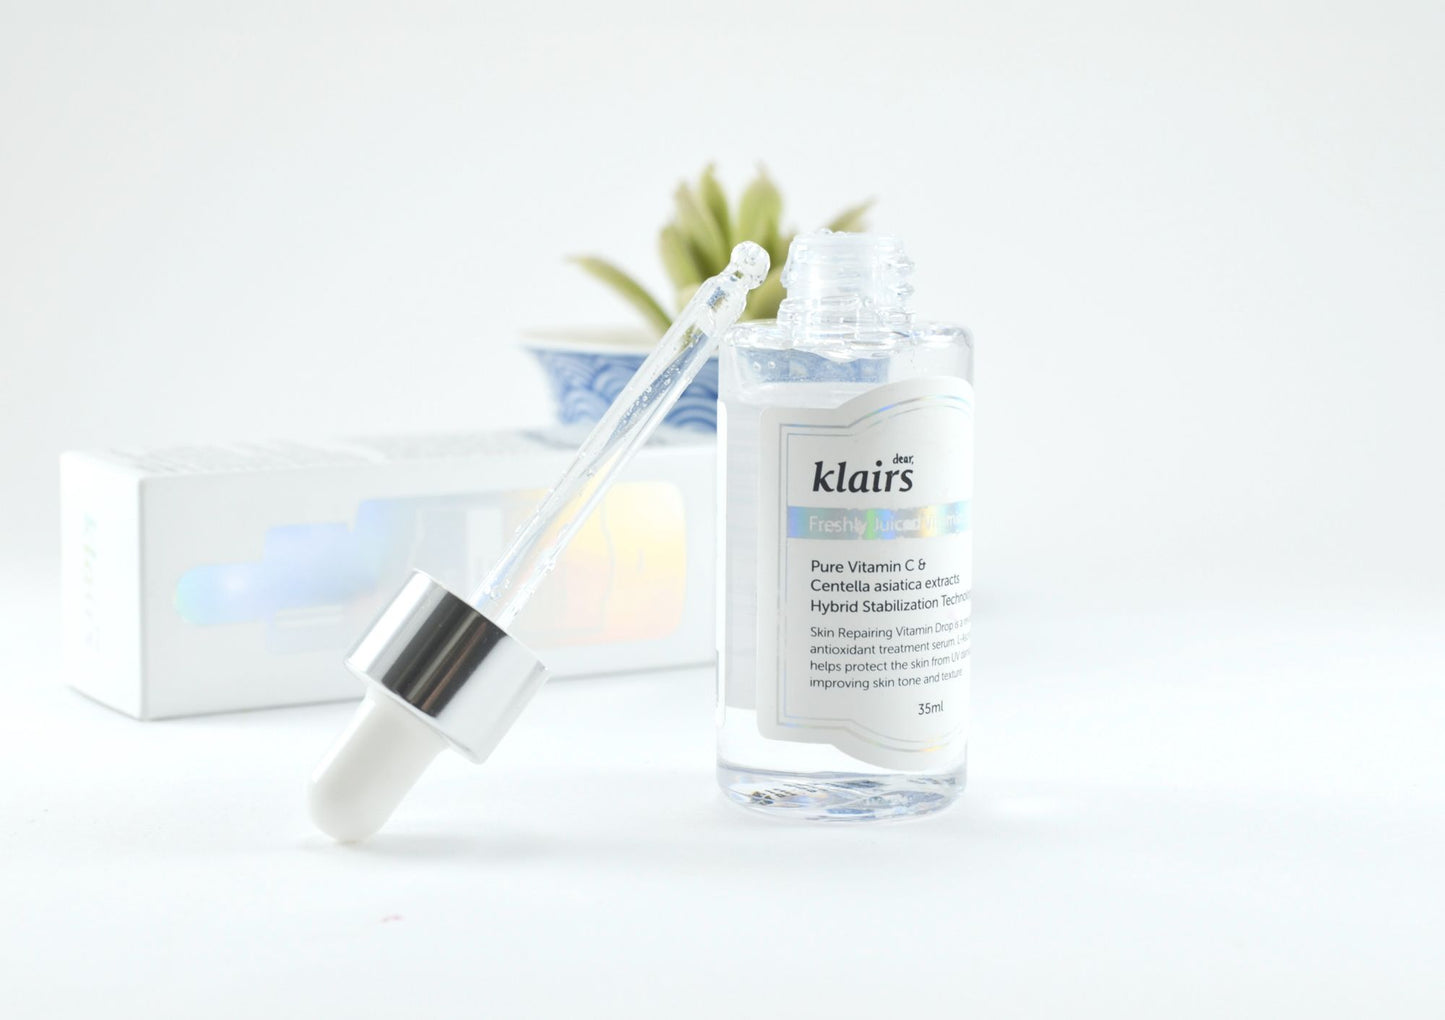 KLAIRS Freshly Juiced Vitamin Drop